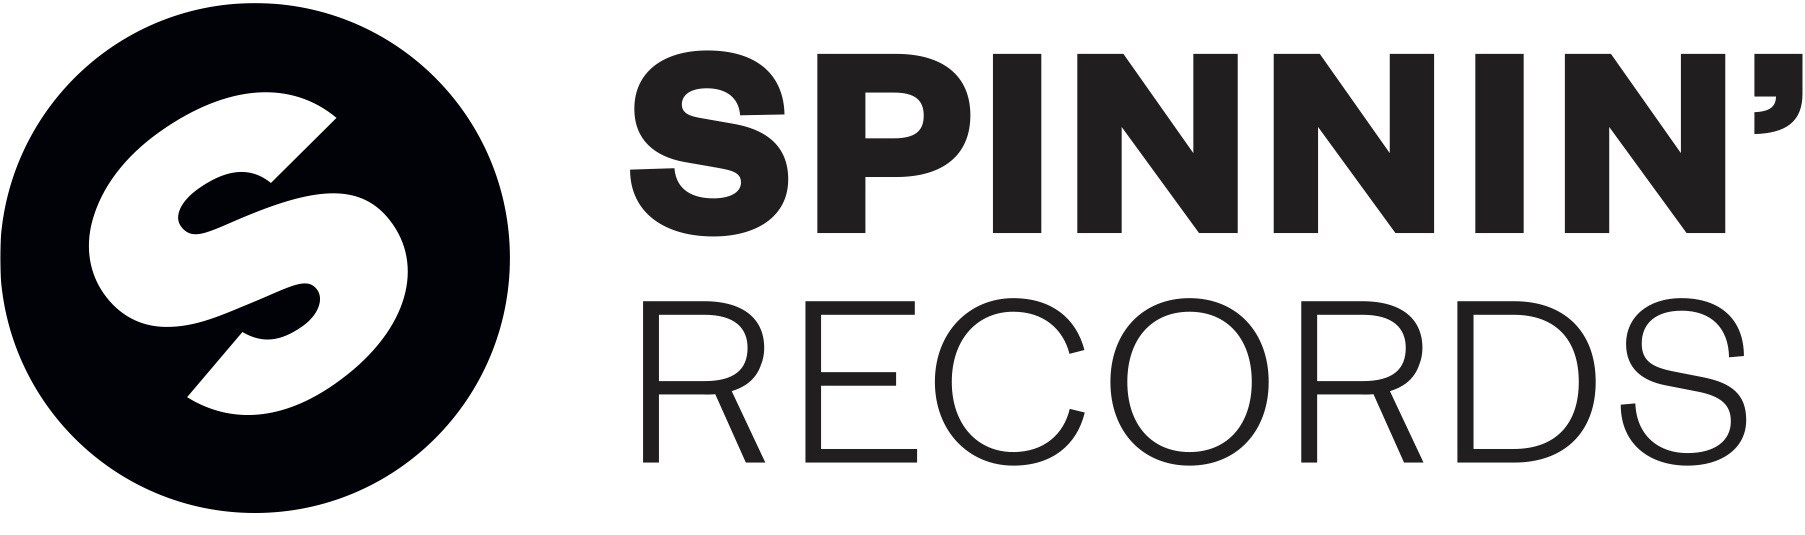 Spinnin_records_logo 2.jpg